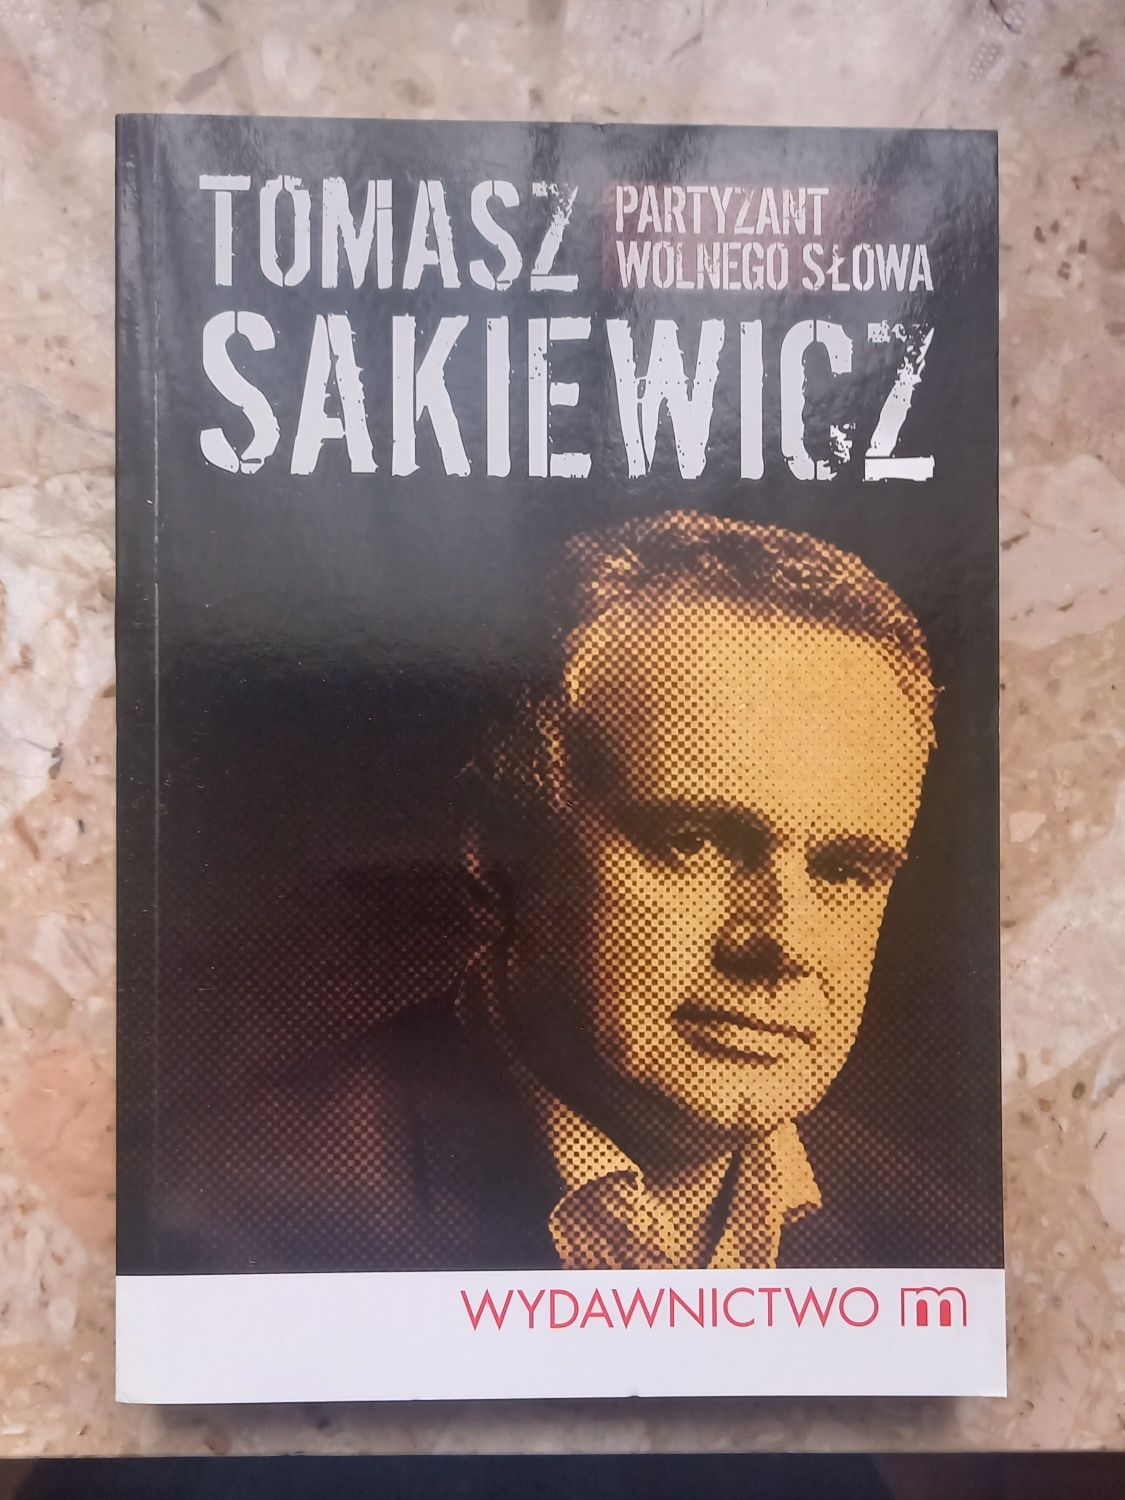 Partyzant wolnego słowa Tomasz Sakiewicz